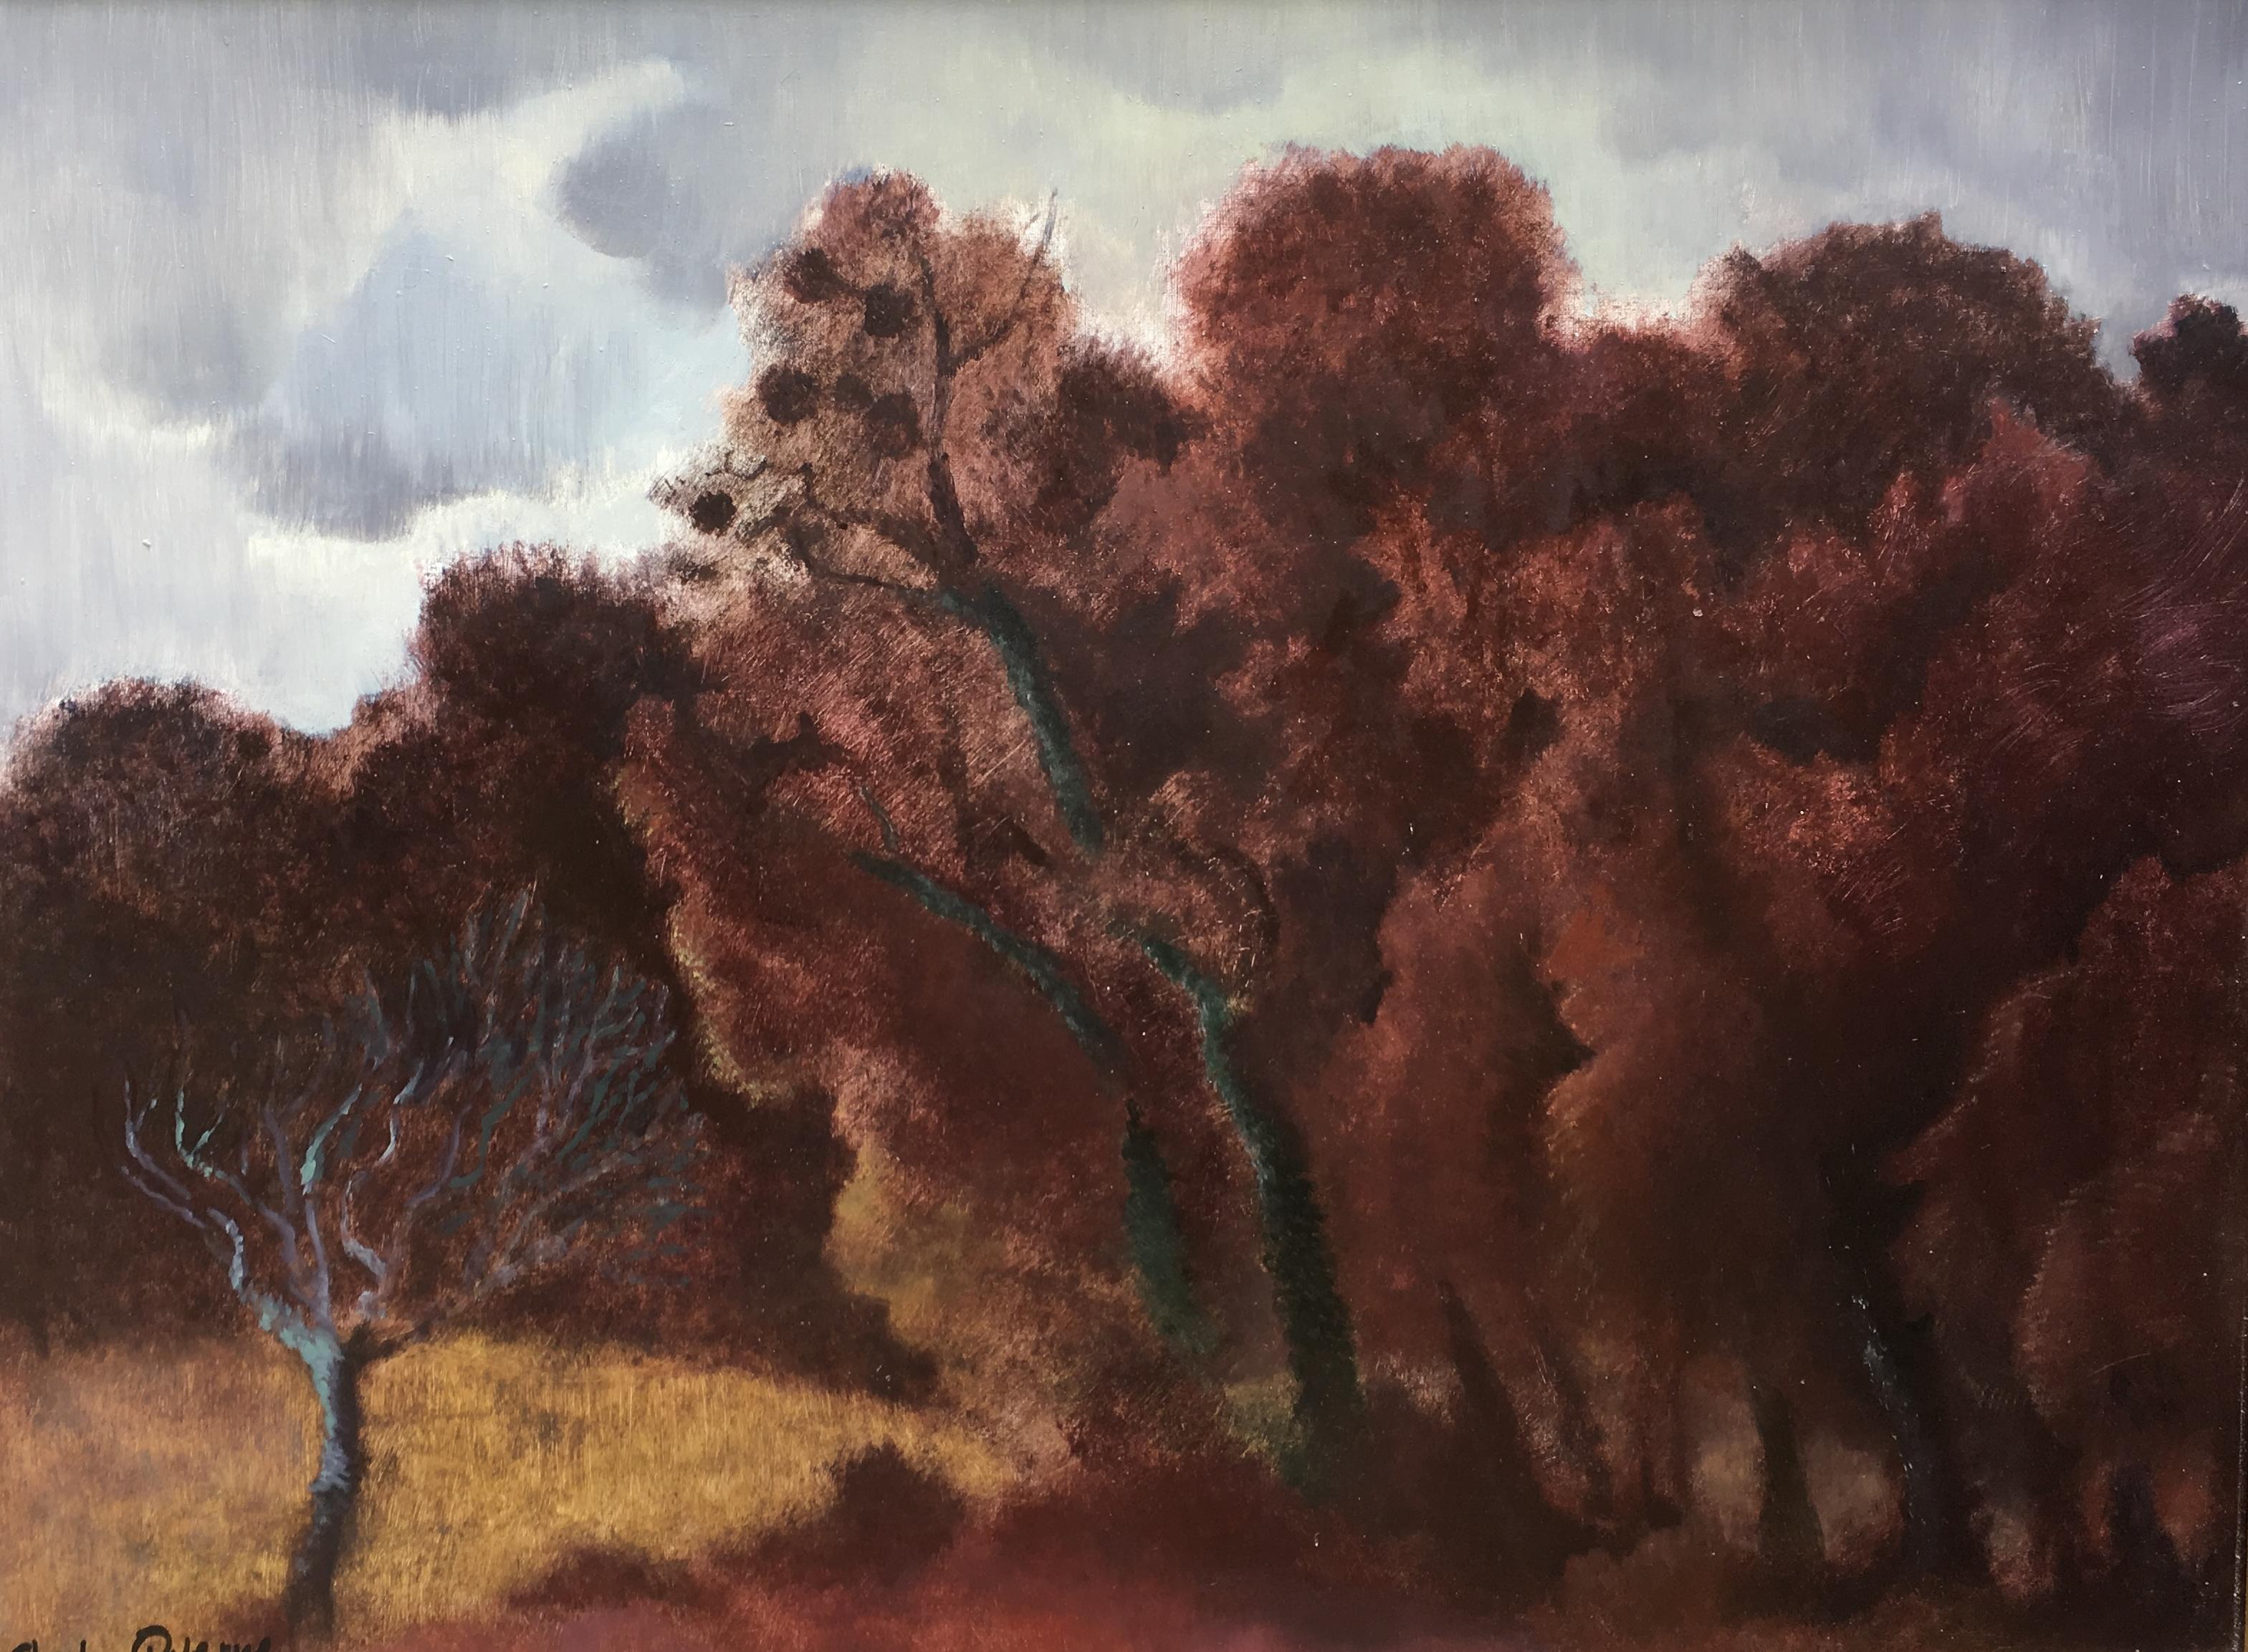 "The oak grove". Autumn landscape. Sheila Querre Oil on panel. Romantic style